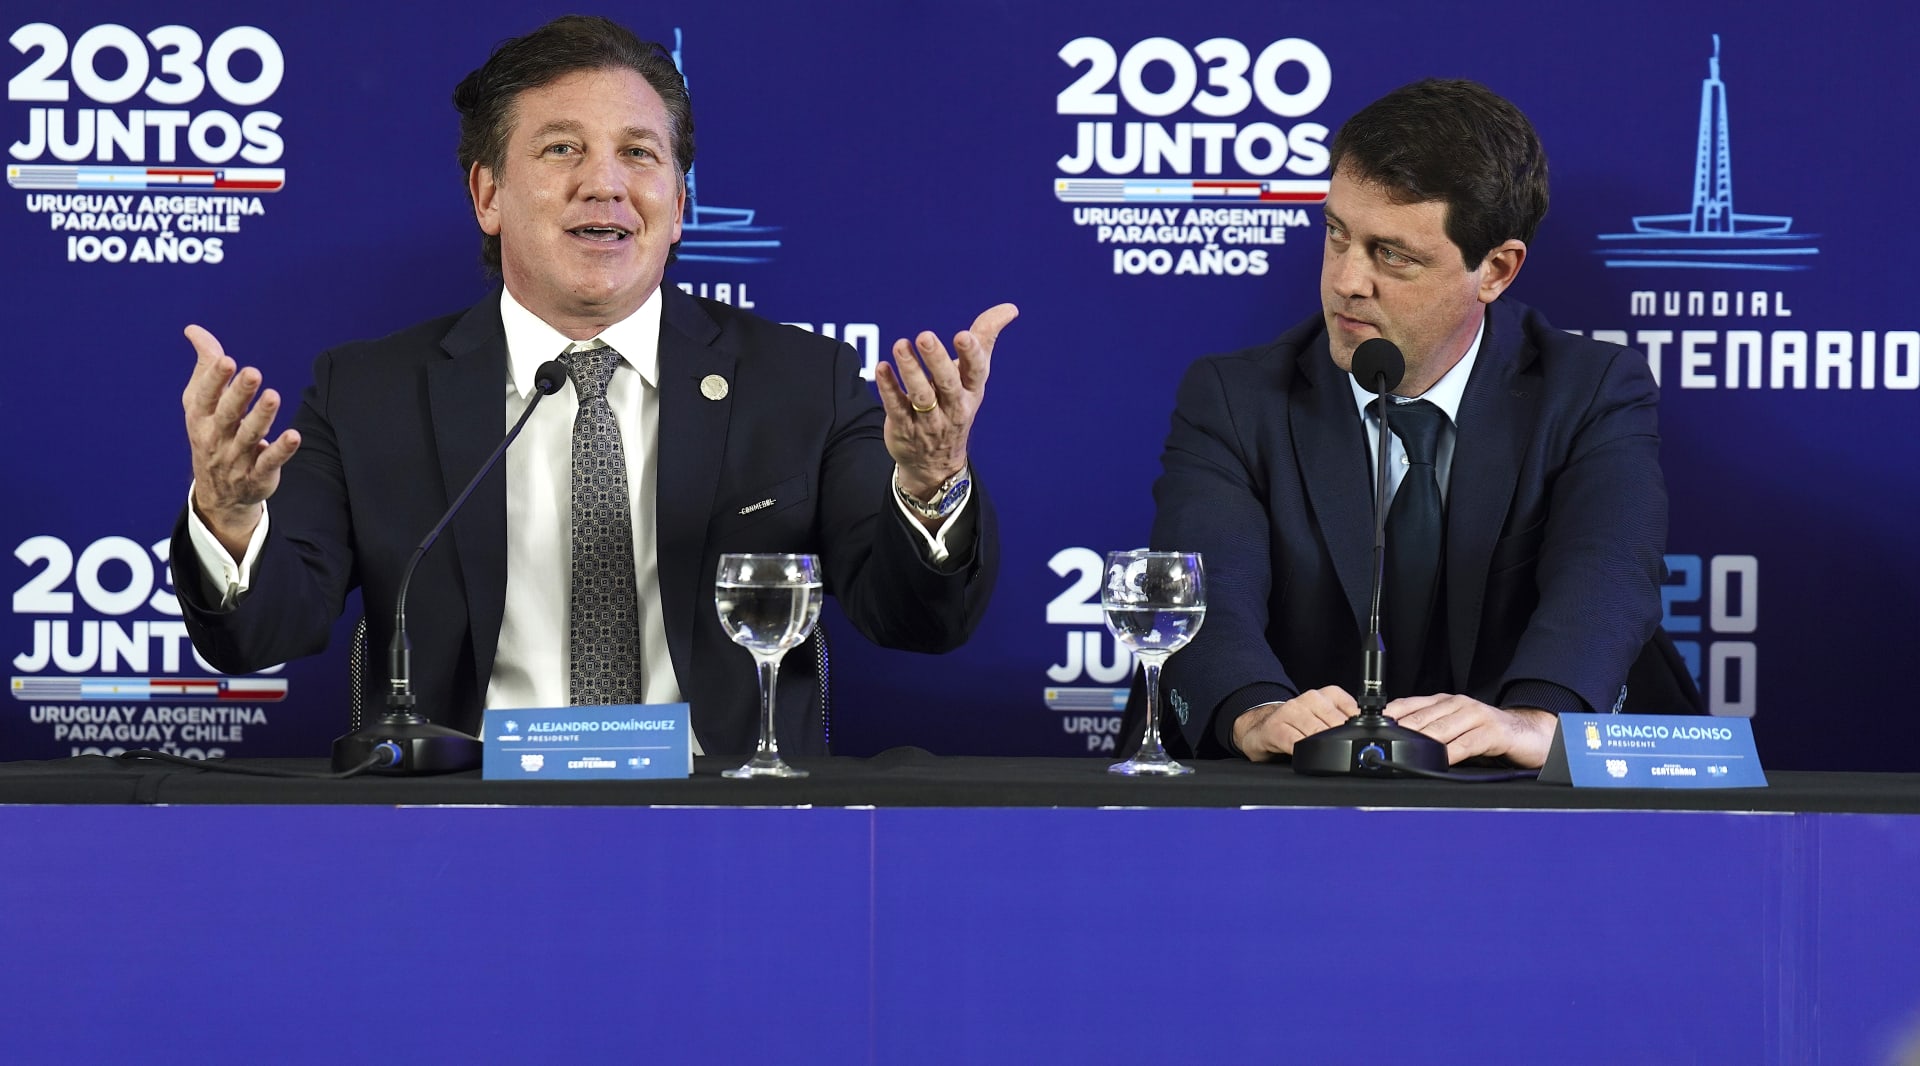 Alejandro Dominguez (vlevo), prezident Jihoamerické fotbalové federace, gestikuluje pod dohledem prezidenta Uruguayského fotbalového svazu Ignacia Alonsa při představovaní společné jihoamerické kandidatury.